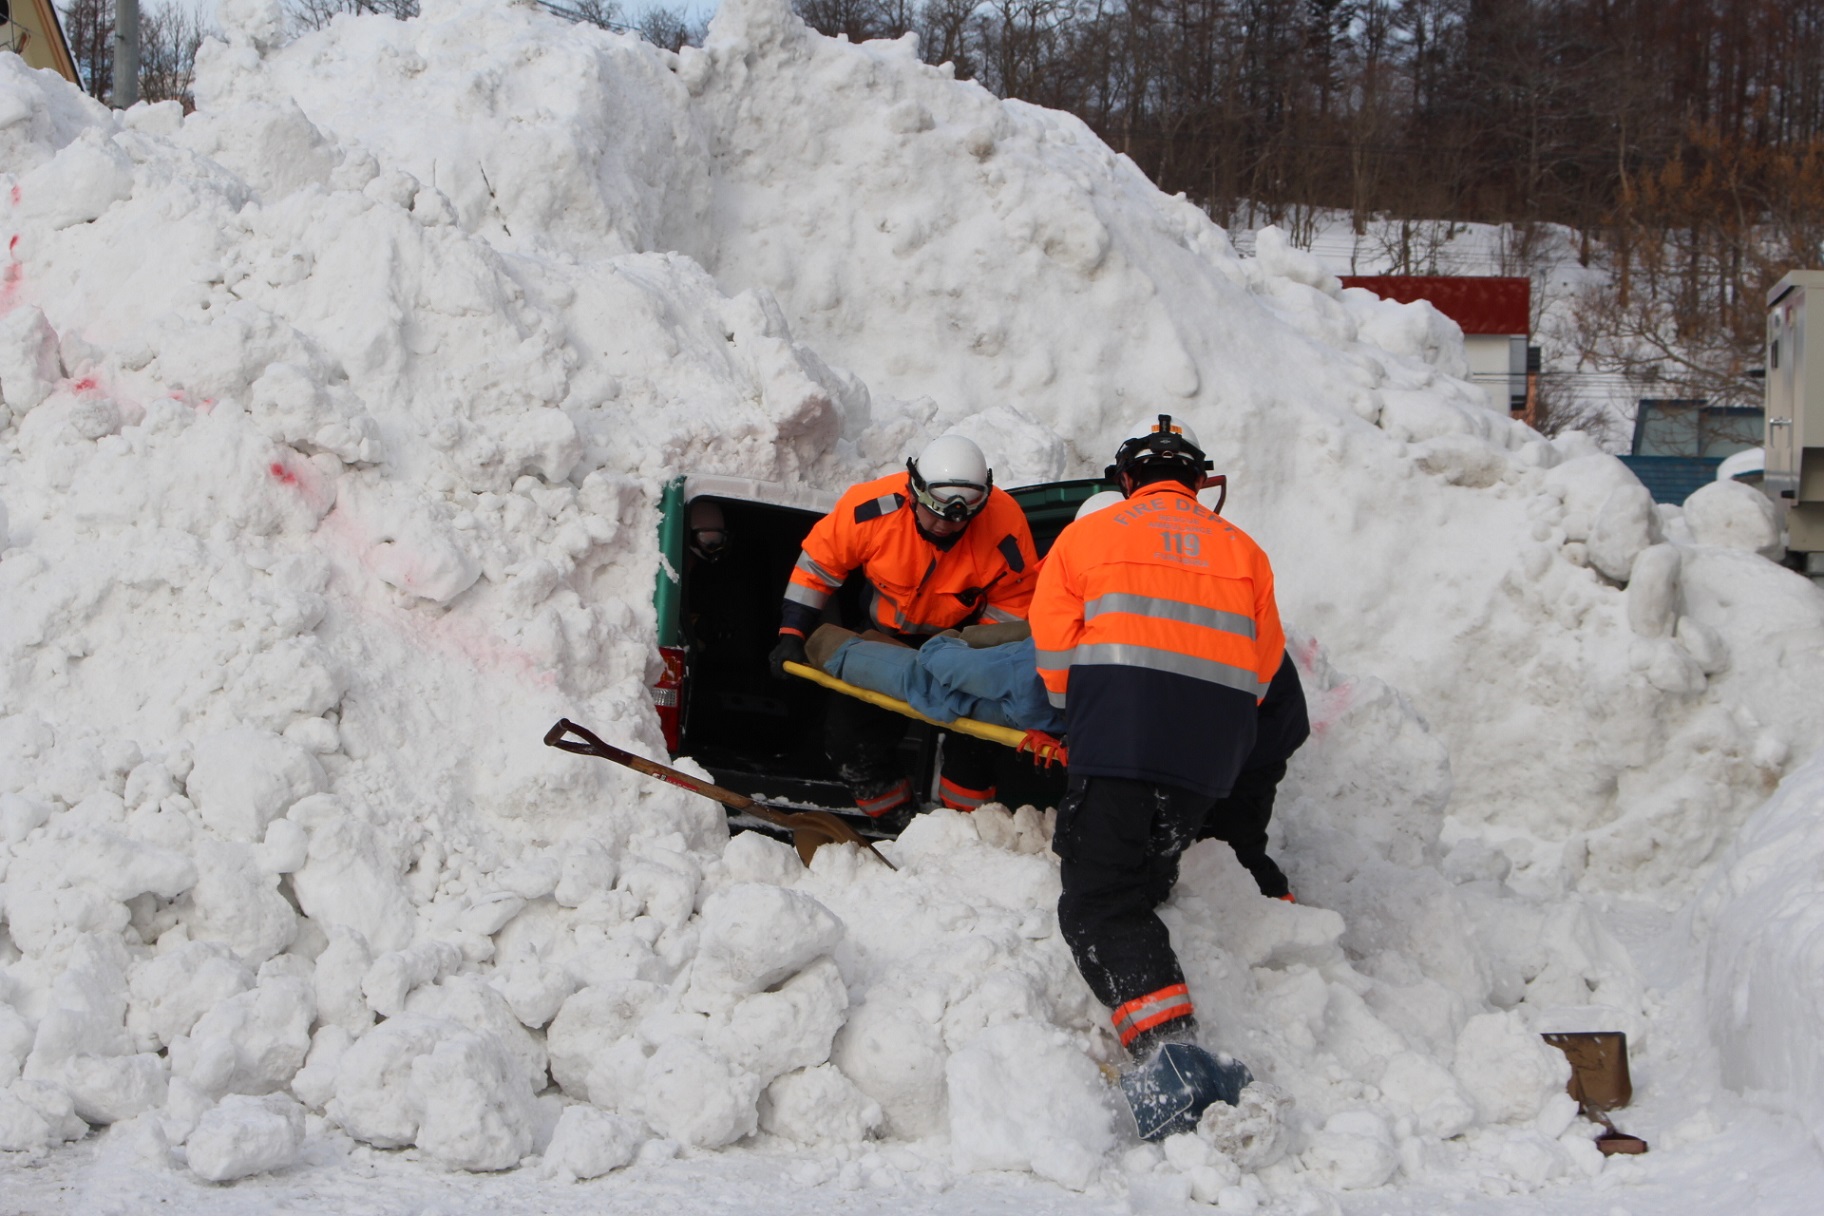 　北後志消防組合古平支署は、２月８、９日の２日間、冬季の車両事故を想定した救助訓練を行いました。
　訓練は、走行中の自動車が雪崩に巻き込まれた想定で、車内に閉じ込められた運転手を救助するというもの。必要な機材を携行した救助隊員が雪に埋まった車両を掘り出し、要救助者を助け出して保温措置などをし、救急車へ収容しました。
　救助訓練に引続き車両同士の衝突事故などにより車内に人が閉じ込められているという想定で車両の破壊訓練も行いました。隊員は一つひとつの動作に声を出しながら作業方法を再確認しました。
　支署長は「消防隊員のスキルアップのために今後も訓練を行っていきたい」と話しました。
